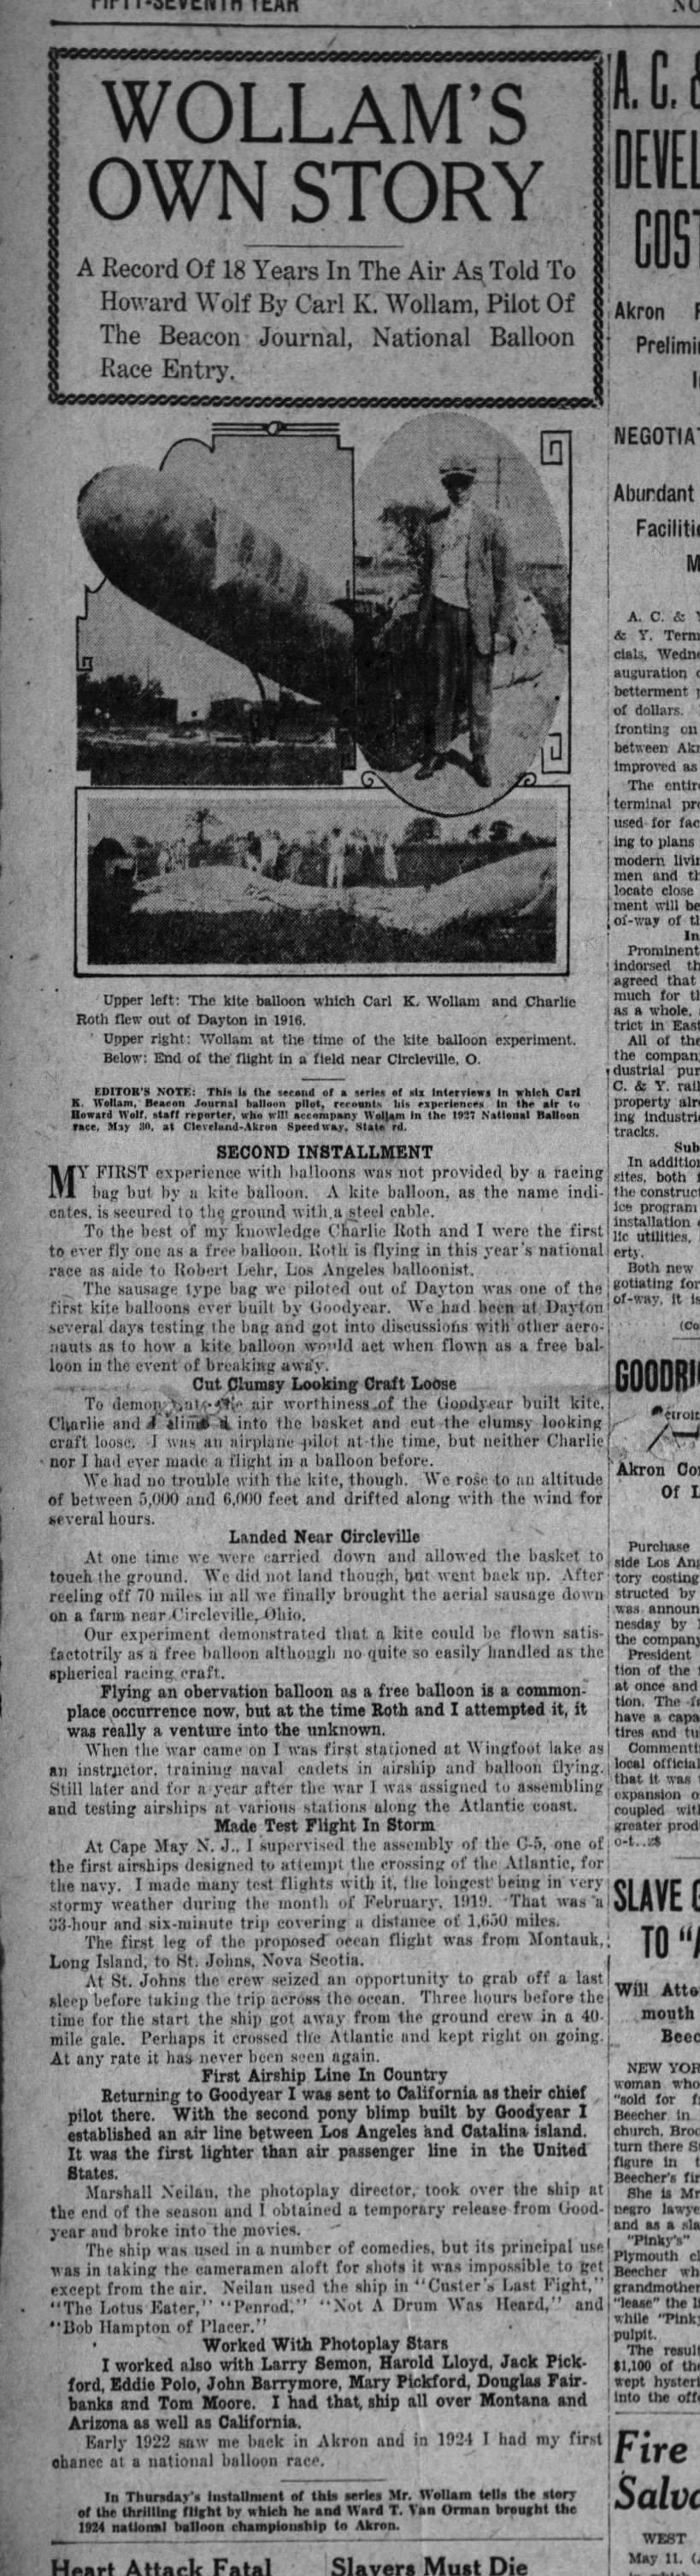 KITE BALLOON, 1916 WOLLAM'S OWN STORY
AKRON BEACON JOURNAL, AKRON, O 11 May 1927, p. 1